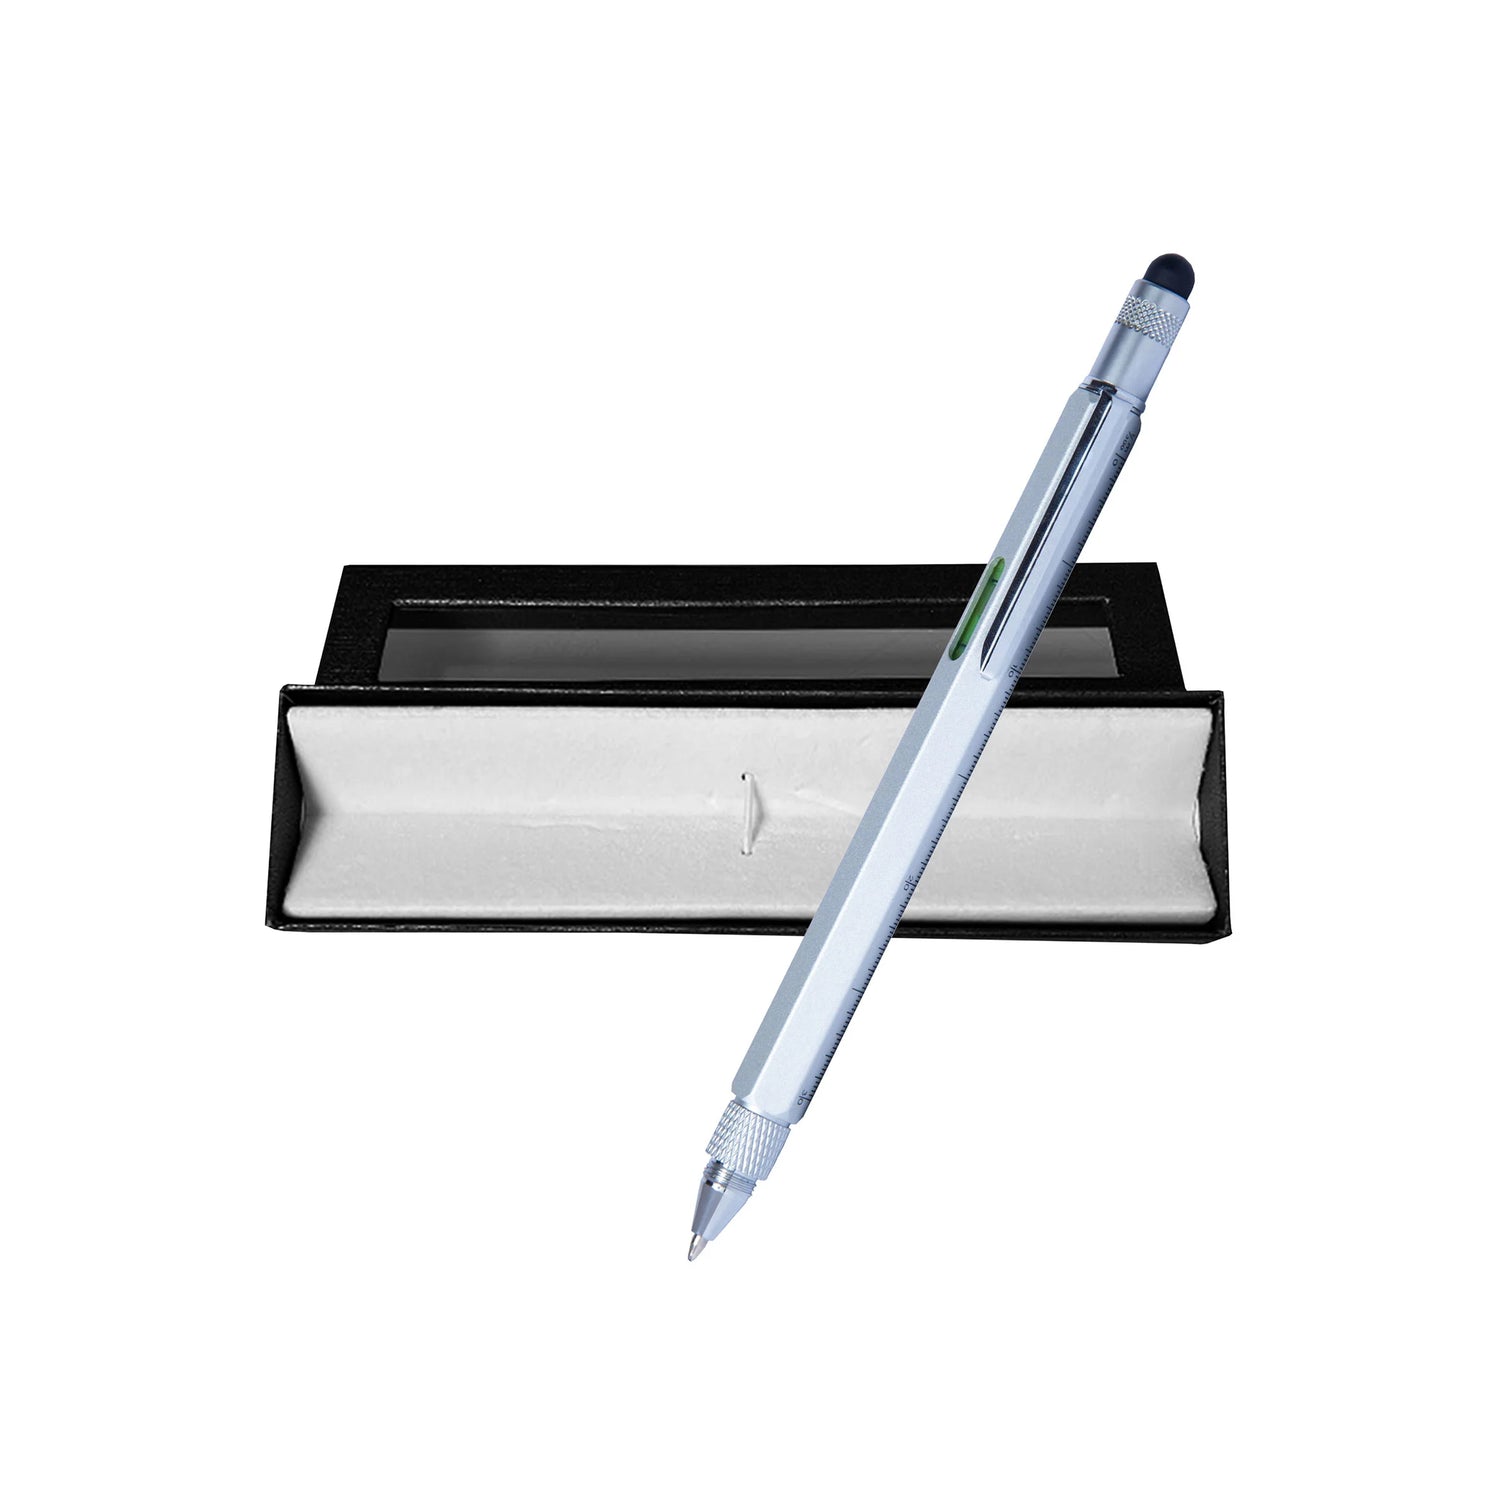 Boligrafo Escalimetro Multifunción – Elegance Class